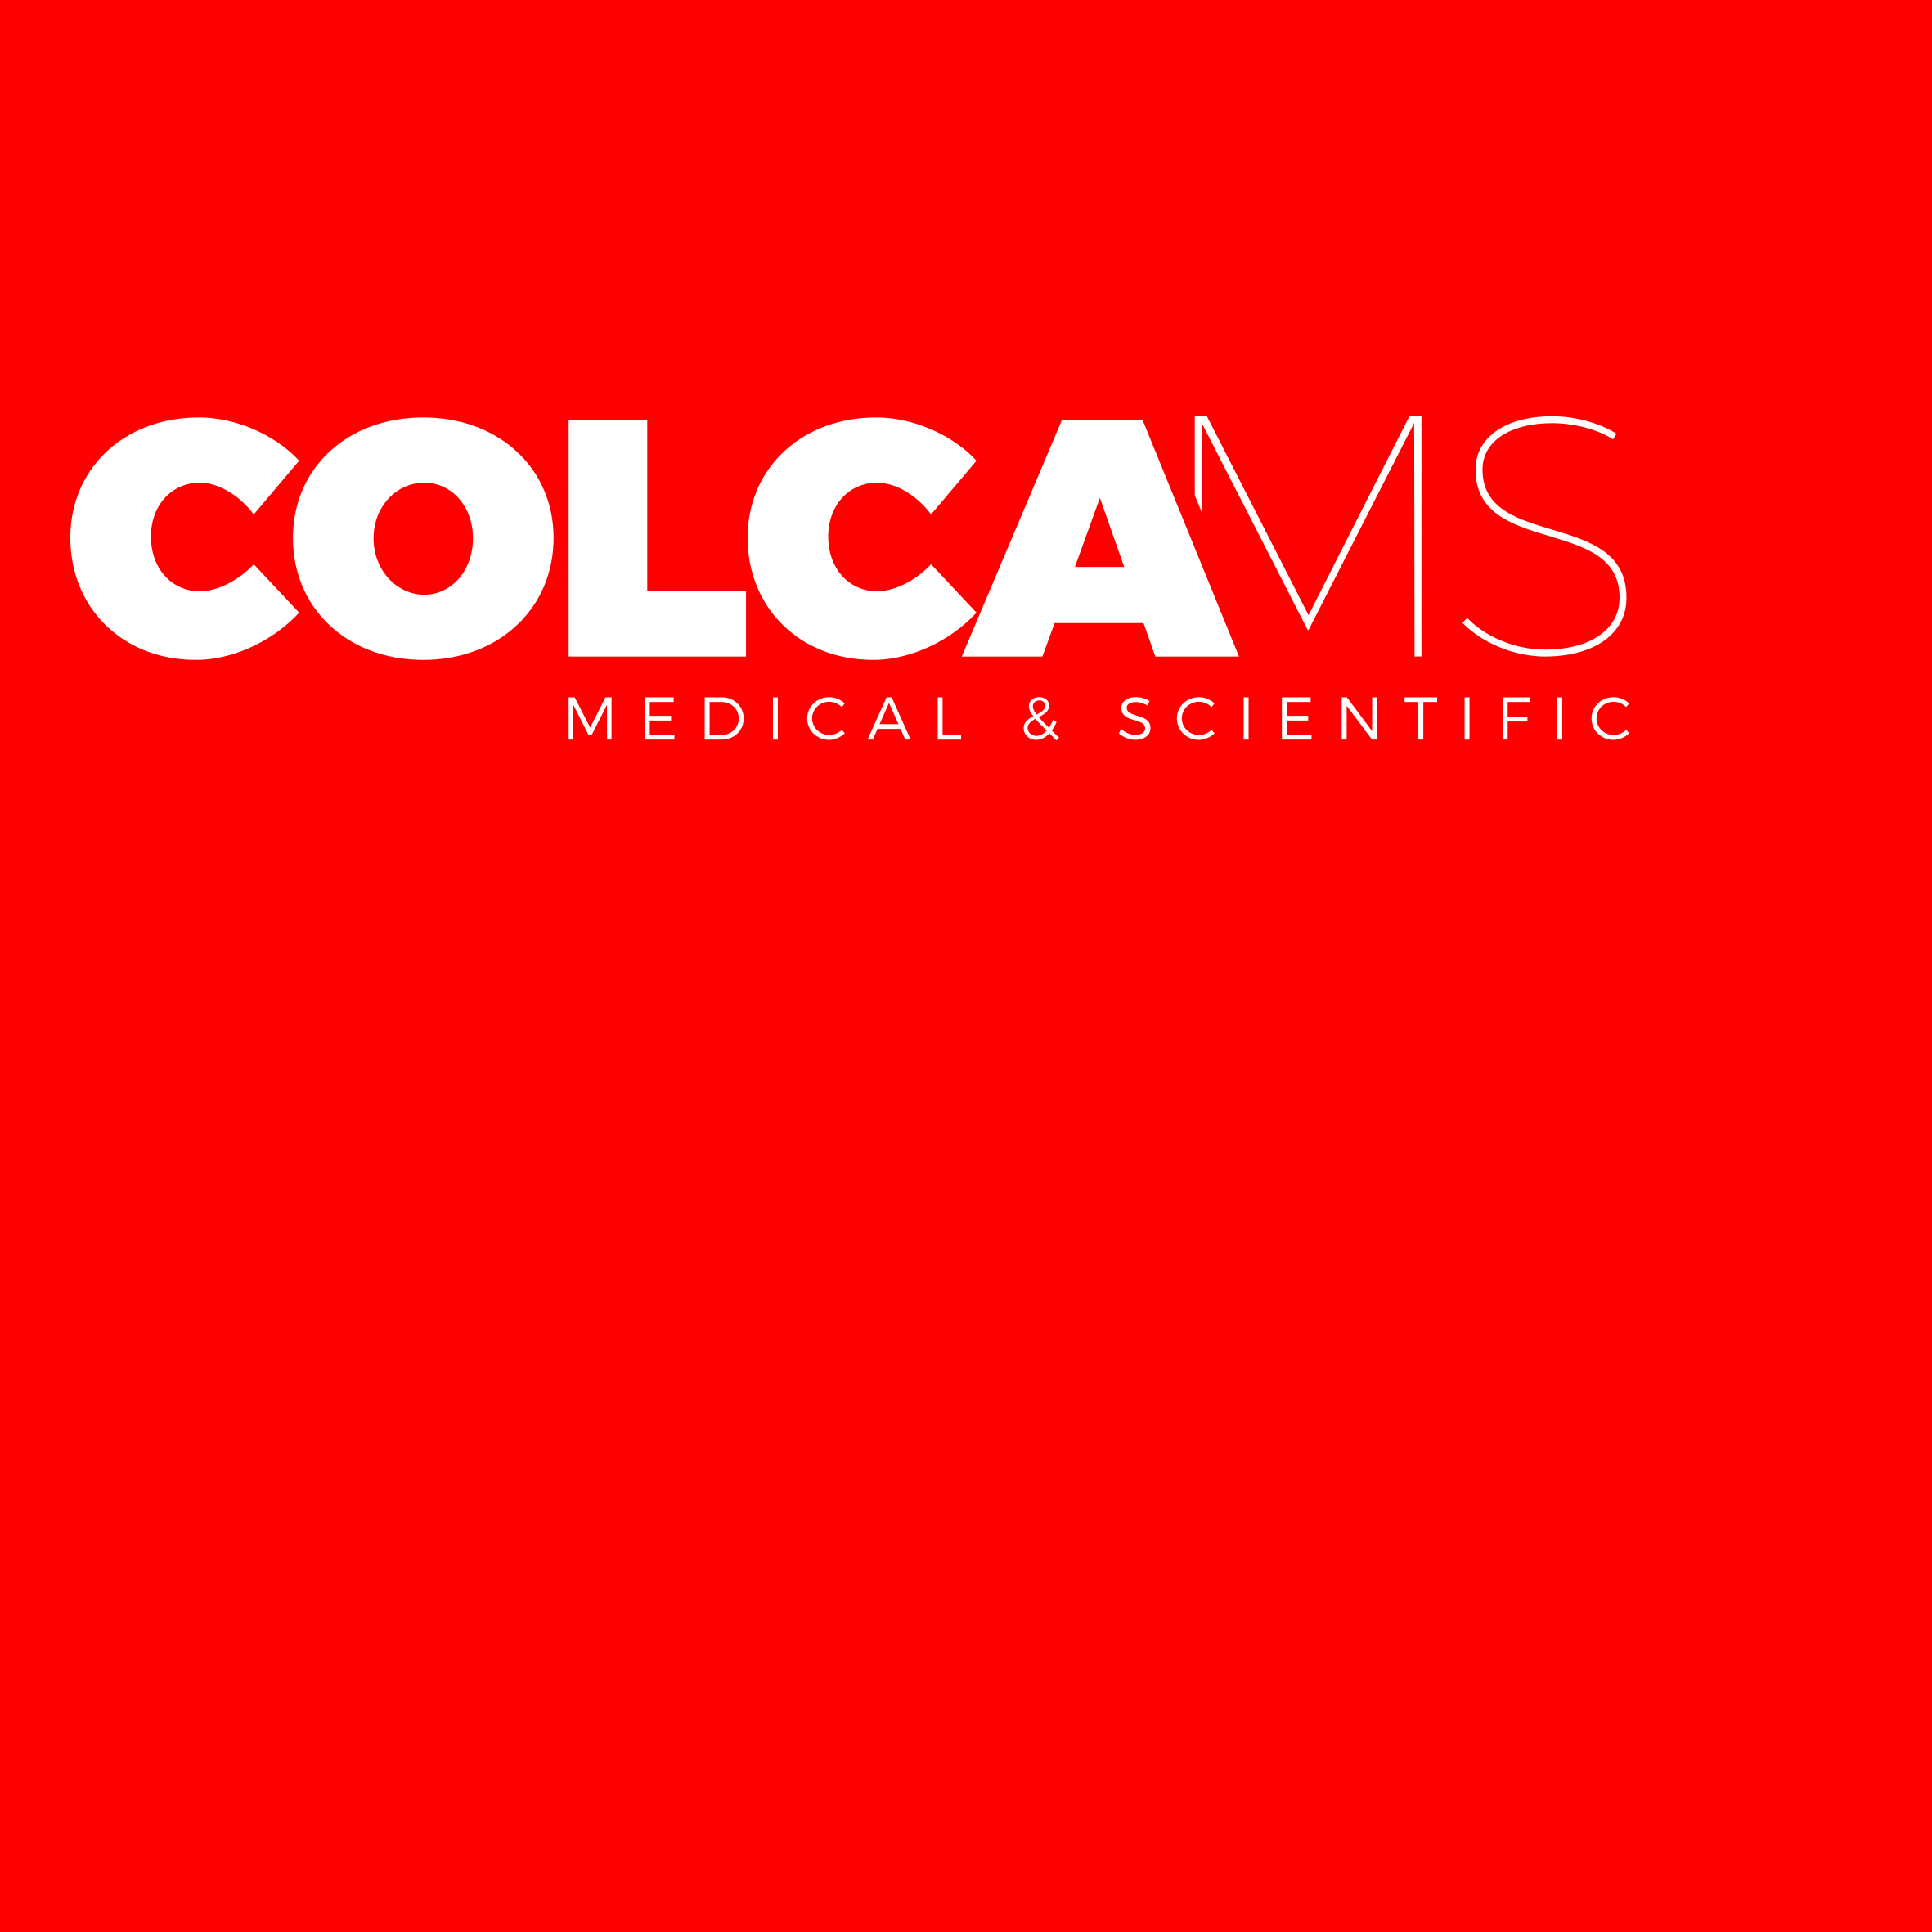 Colca Medical & Scientific